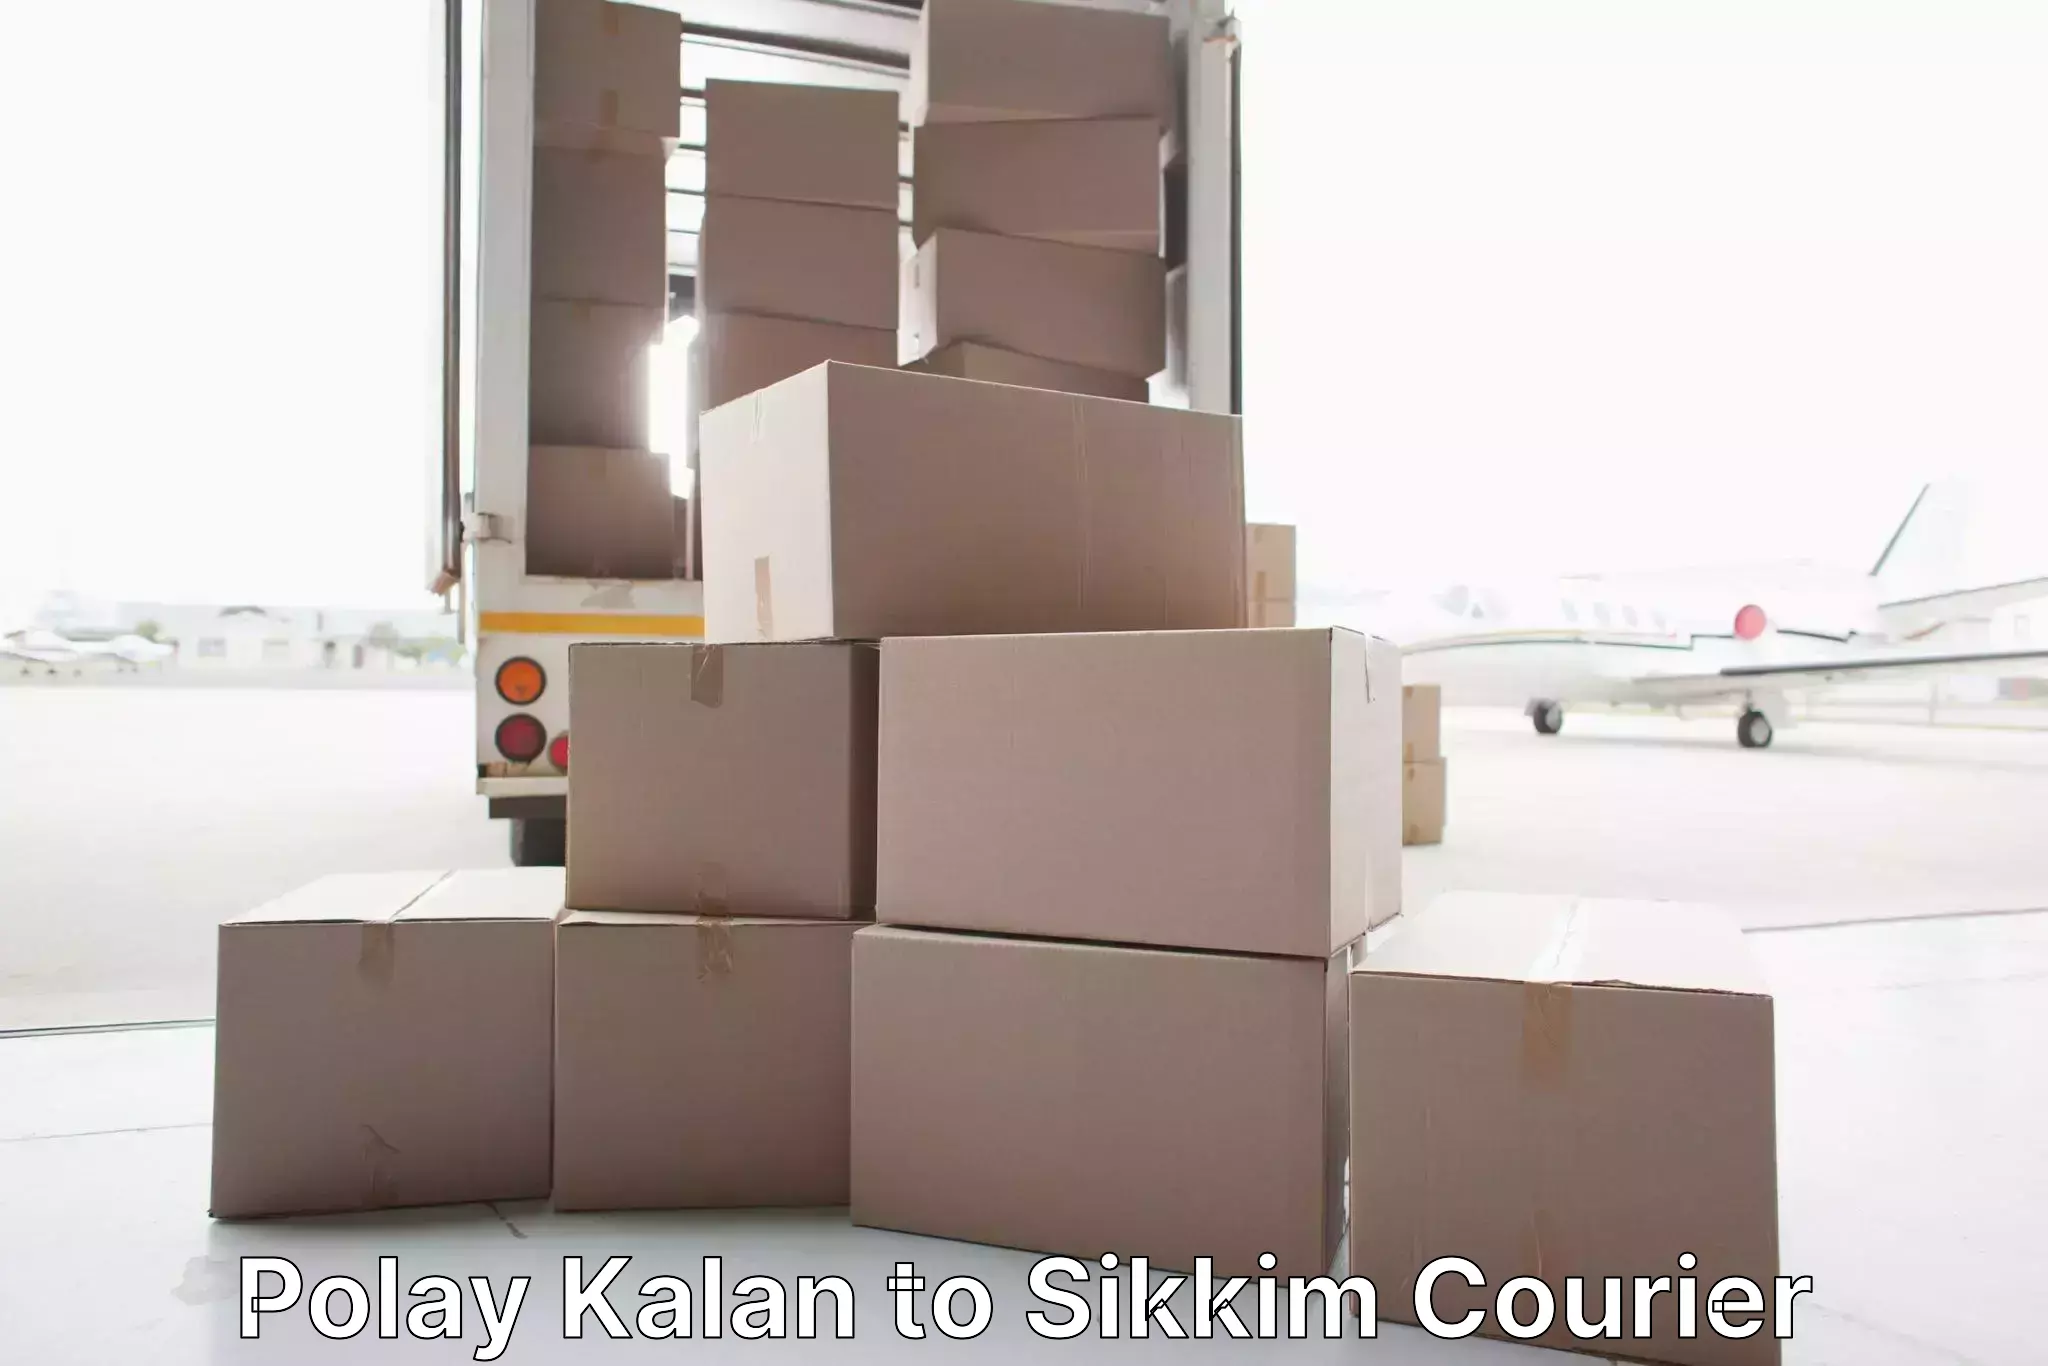 Premium moving services Polay Kalan to Sikkim